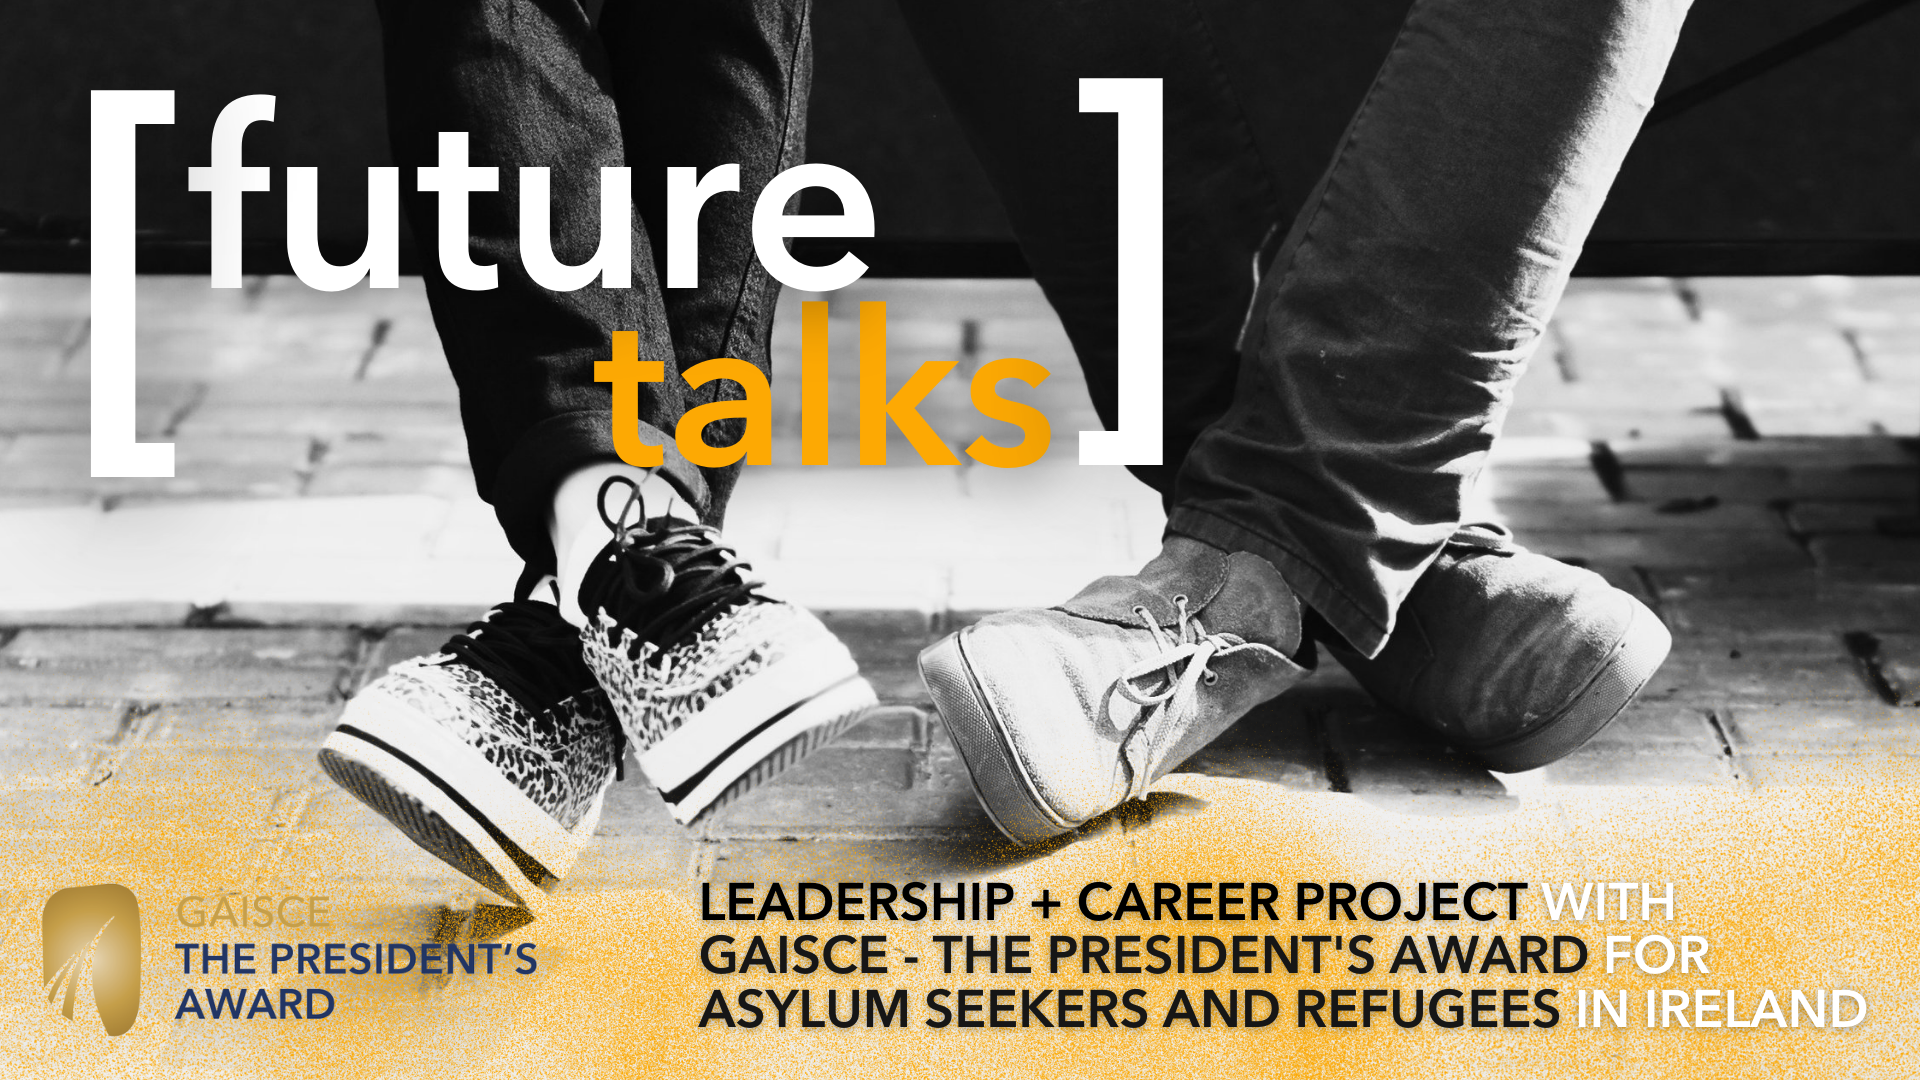 محادثات المستقبل - مشروع القيادة والوظيفة مع Gaisce لطالبي اللجوء واللاجئين في أيرلندا